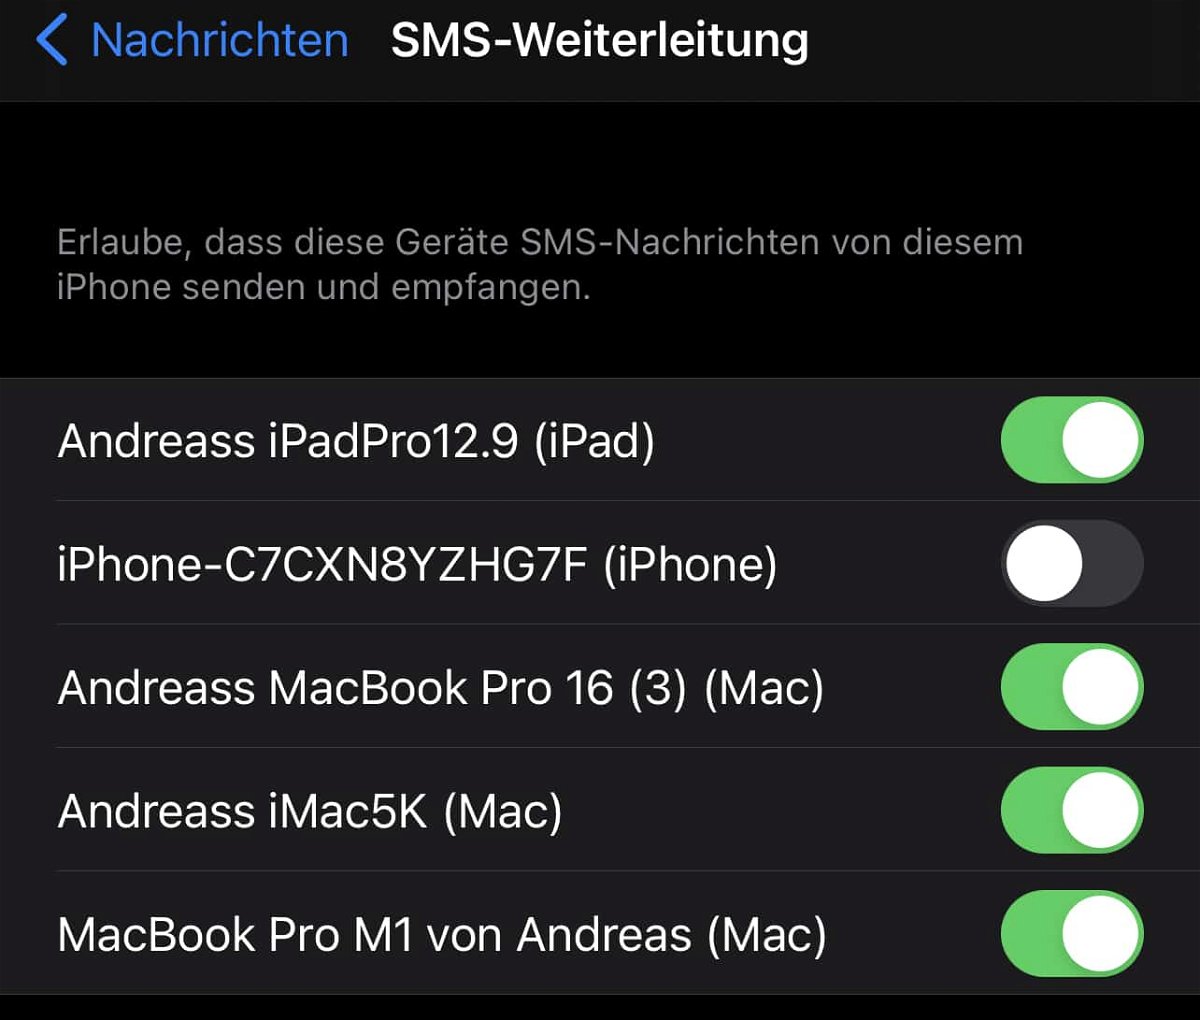 SMS auf einem neuen iPad/Mac empfangen